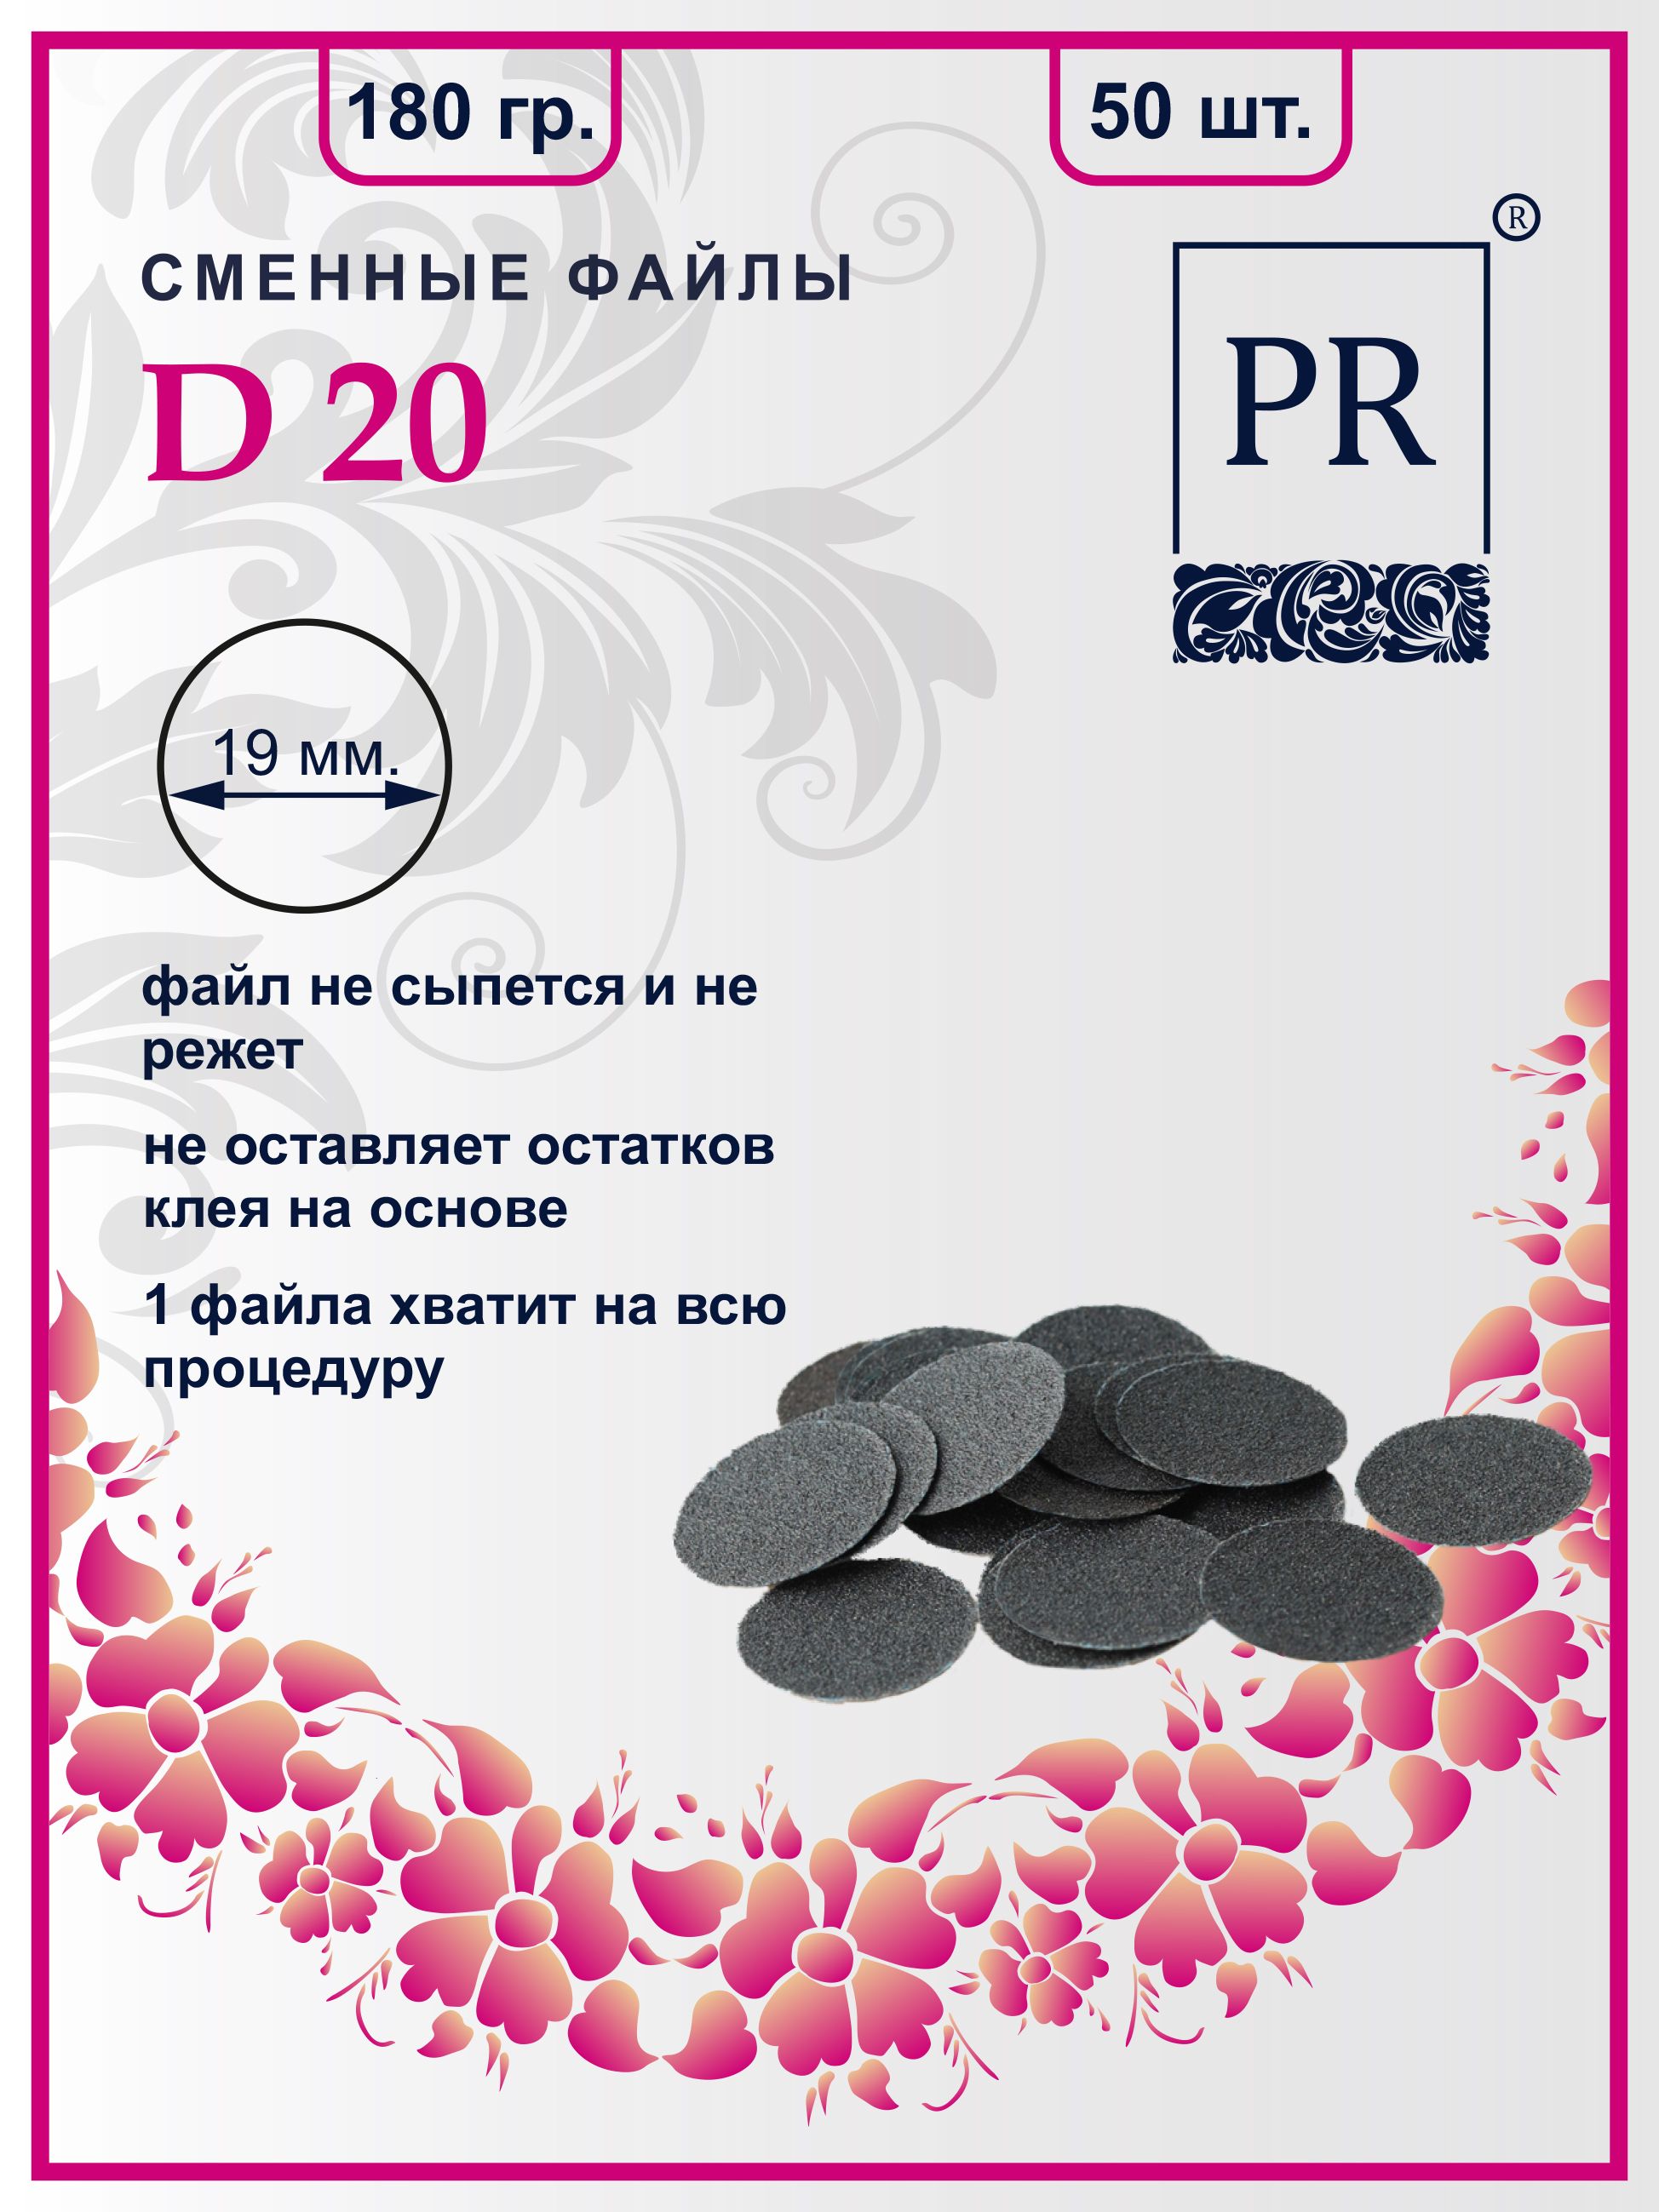 Сменные файлы Pilochki Russia диски для педикюра для диска М 180 грит 50 штук зажимы для бумаг goodmark ные 15 мм 60 штук